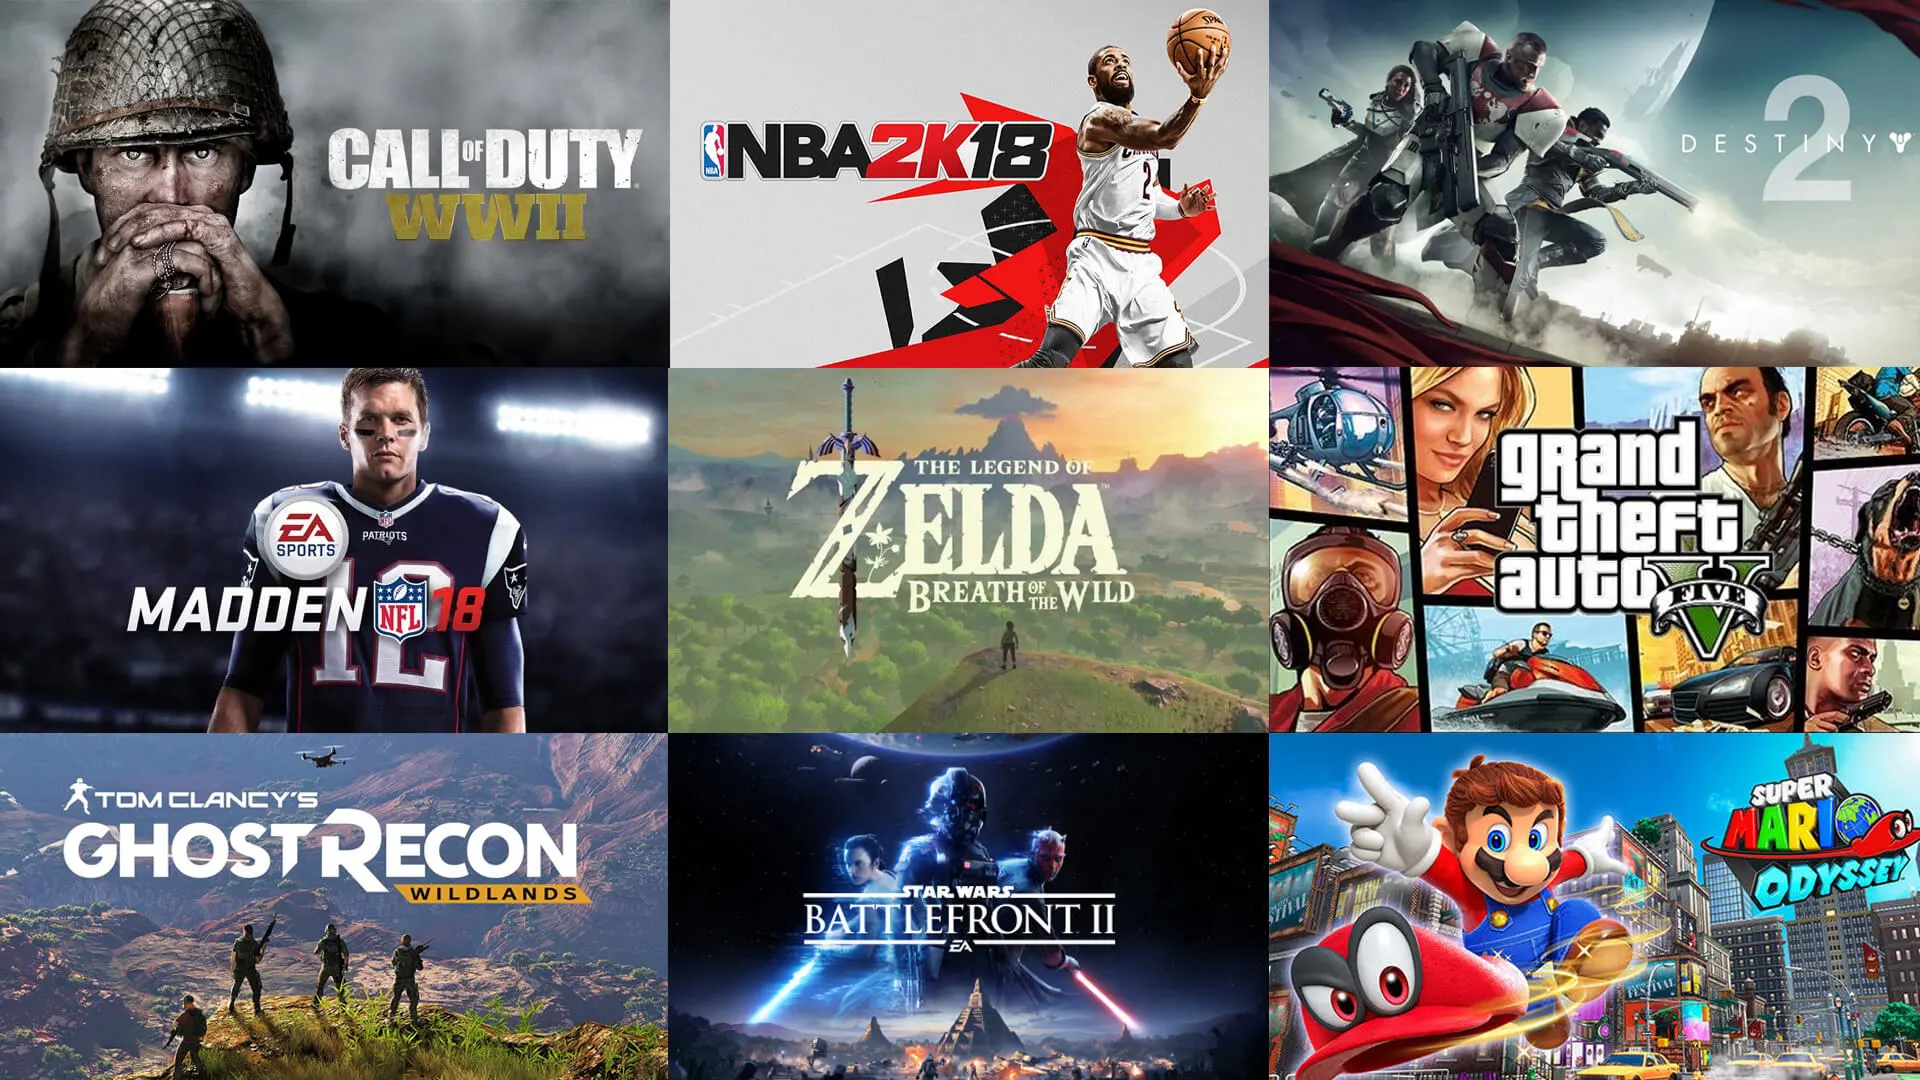 Les 20 jeux vidéo les plus vendus de tous les temps | Classement